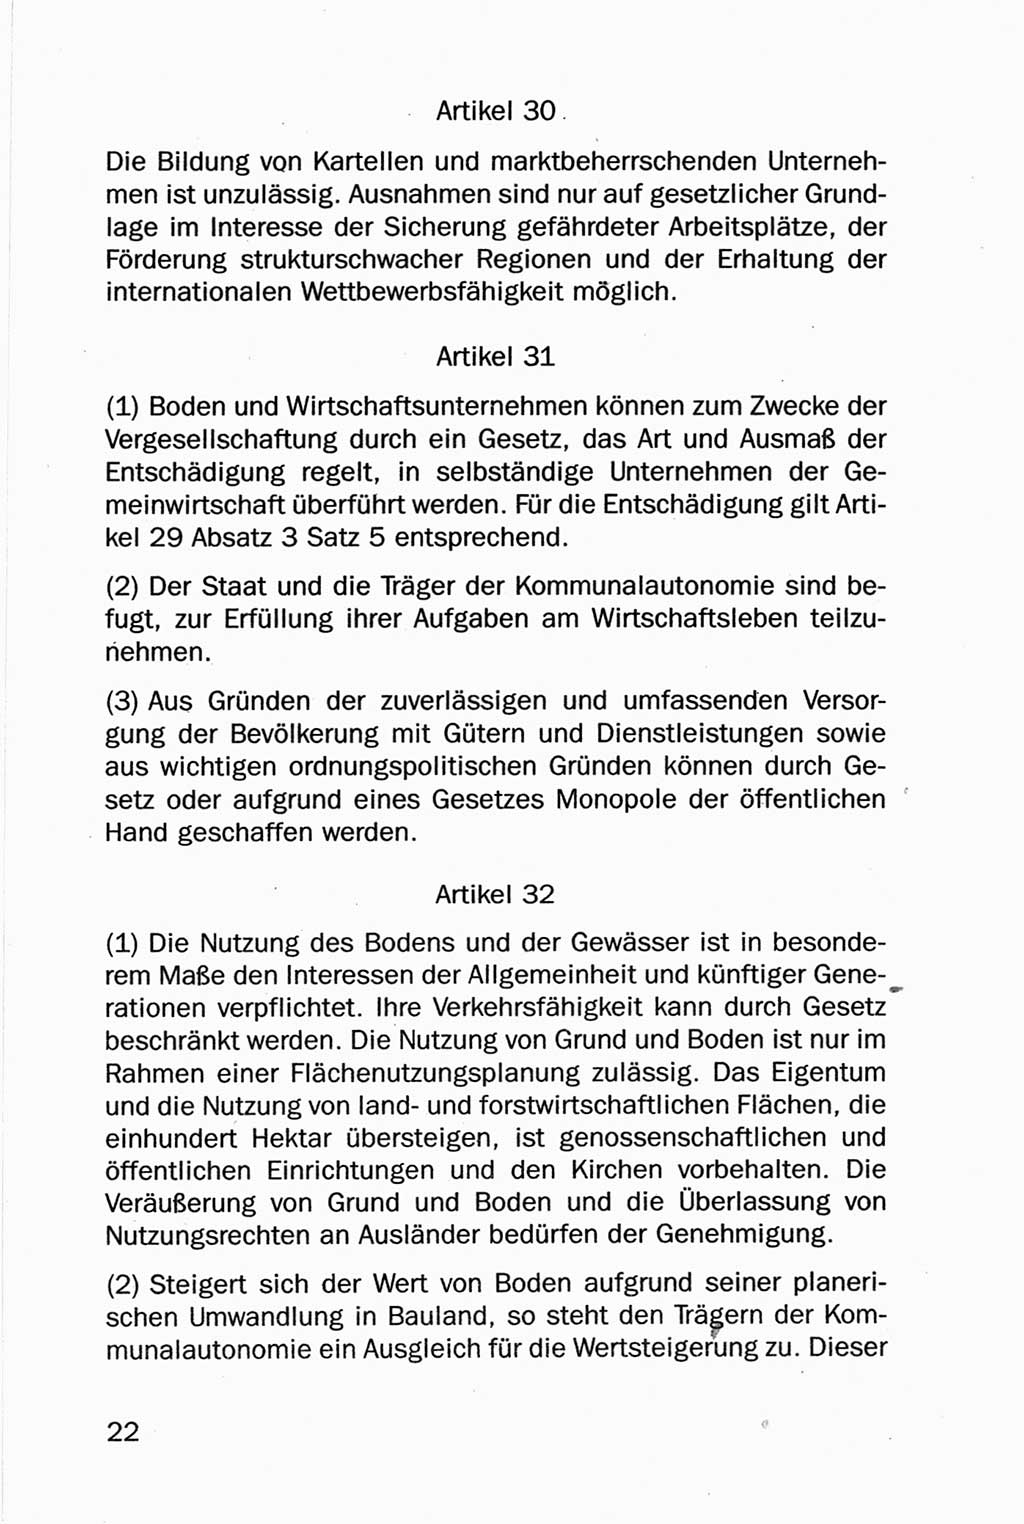 Entwurf Verfassung der Deutschen Demokratischen Republik (DDR), Arbeitsgruppe "Neue Verfassung der DDR" des Runden Tisches, Berlin 1990, Seite 22 (Entw. Verf. DDR 1990, S. 22)